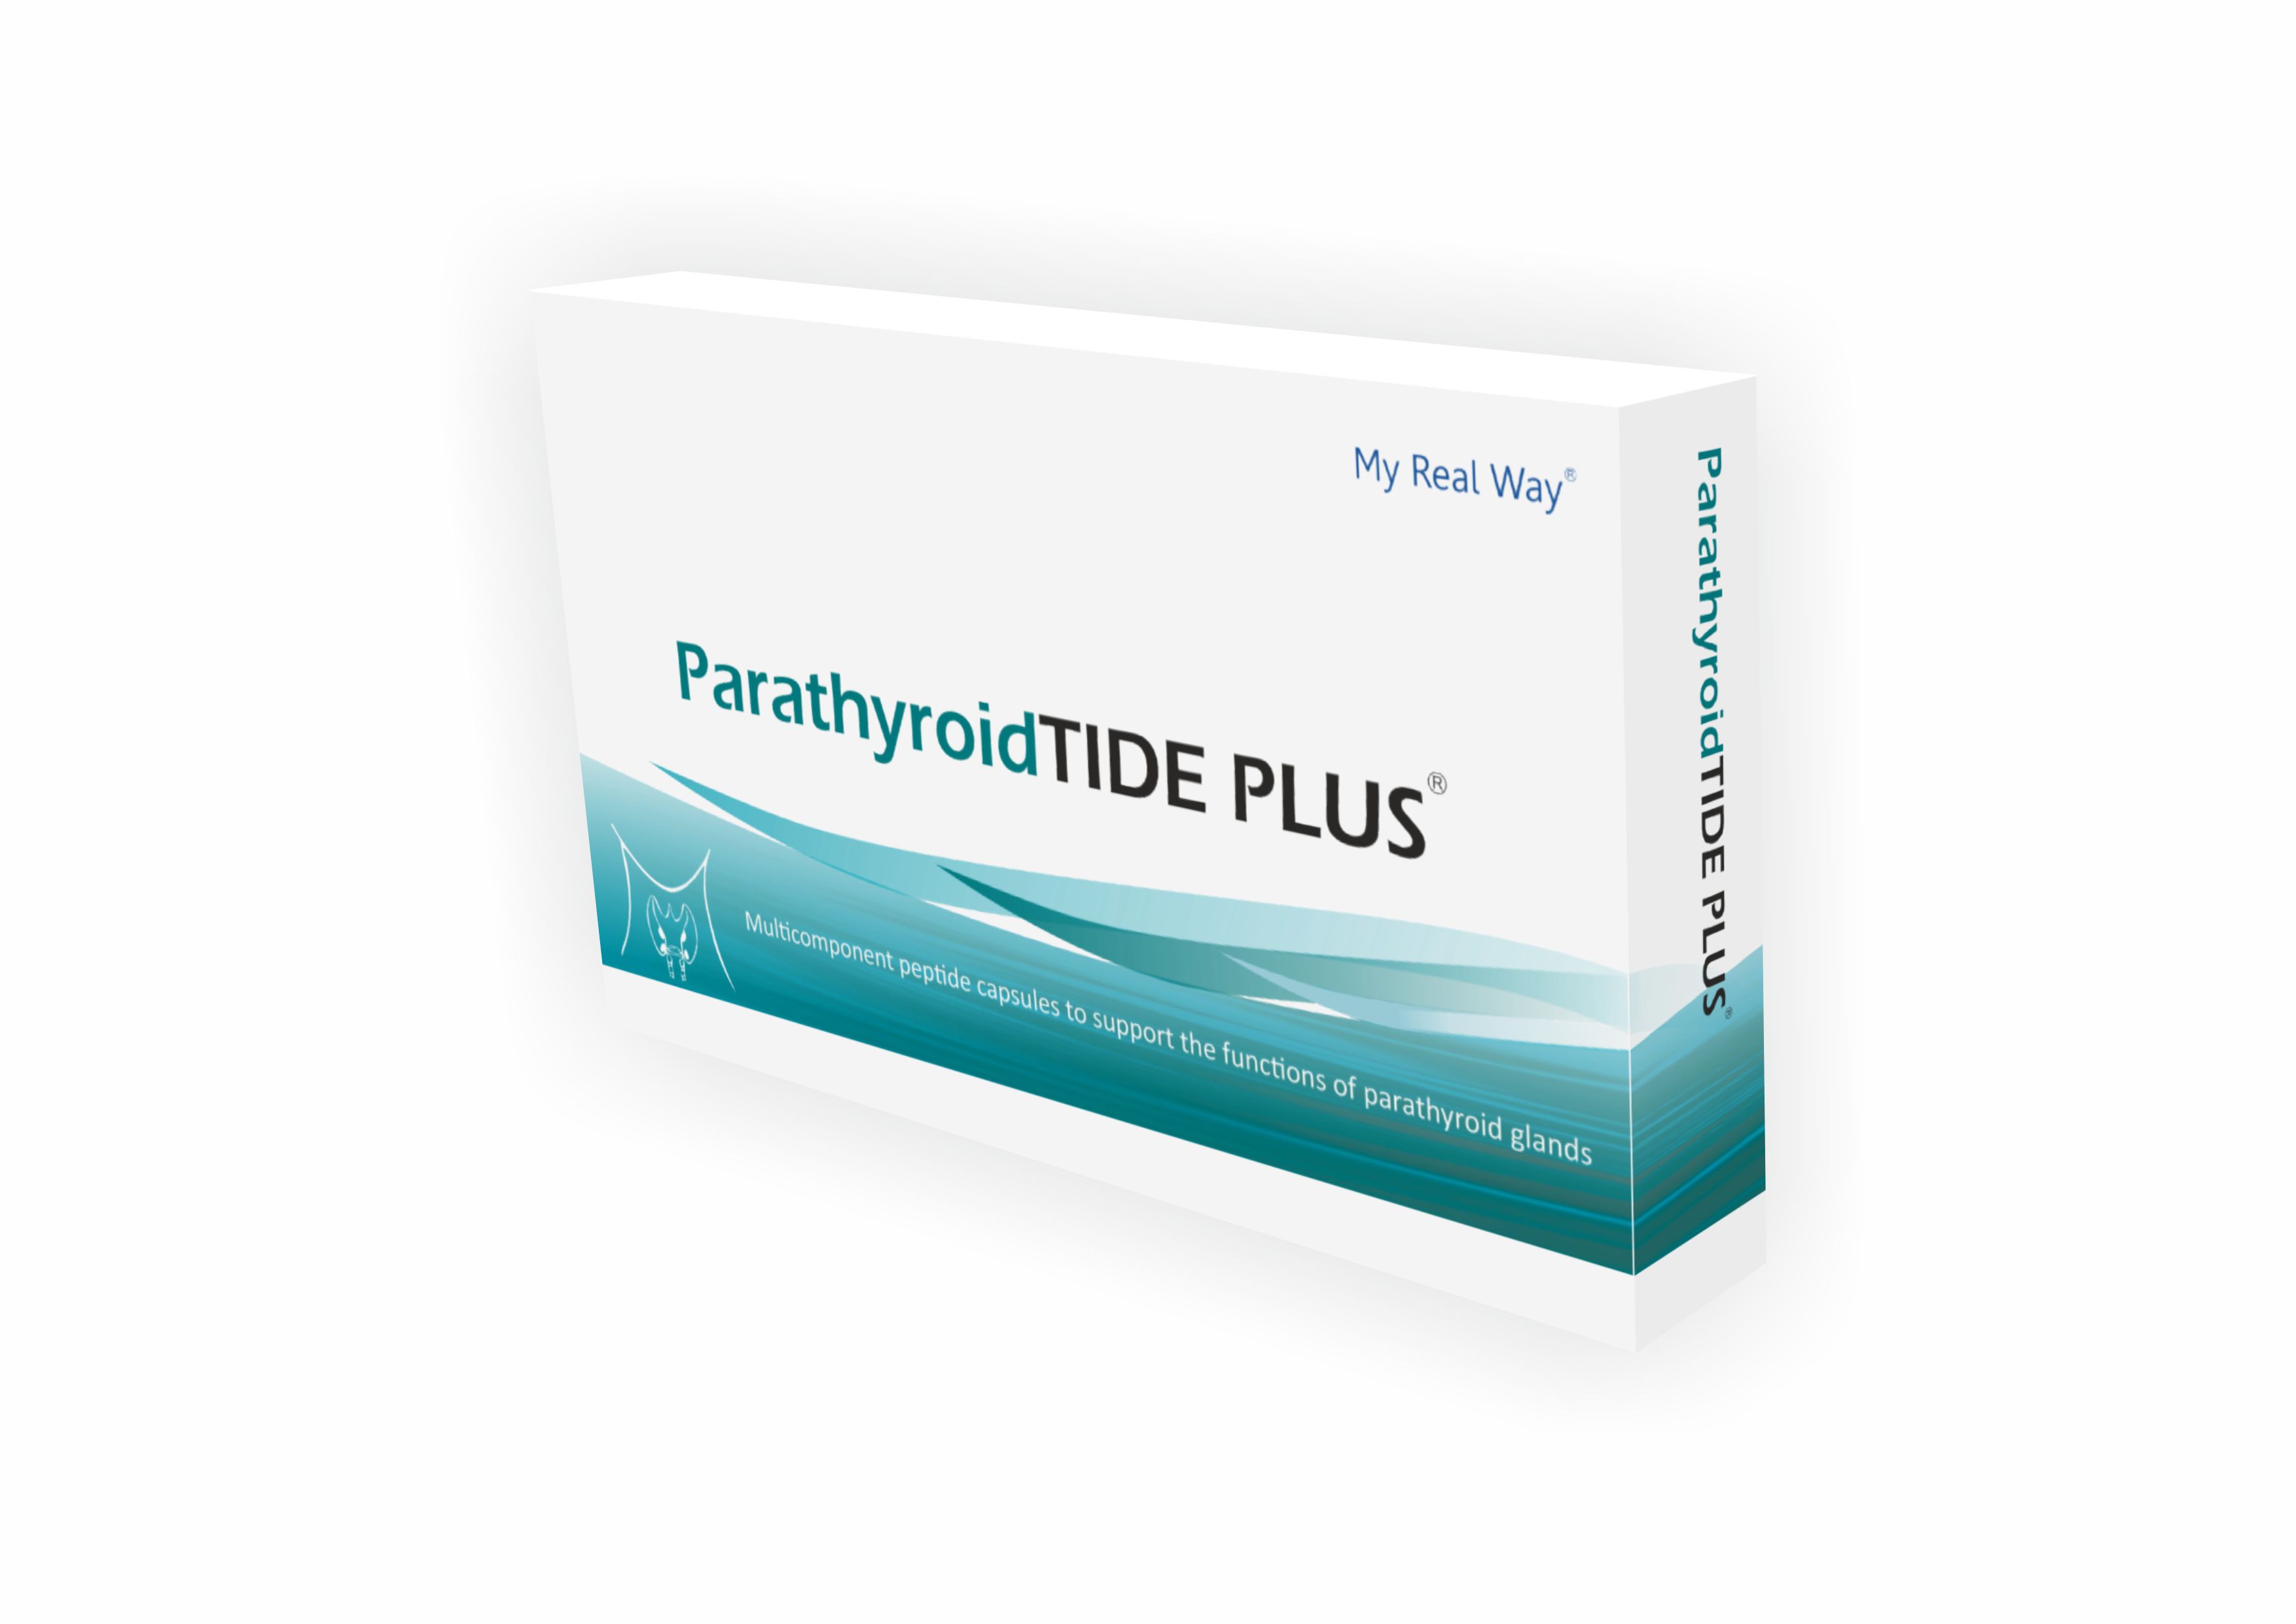 ParathyroidTIDE PLUS